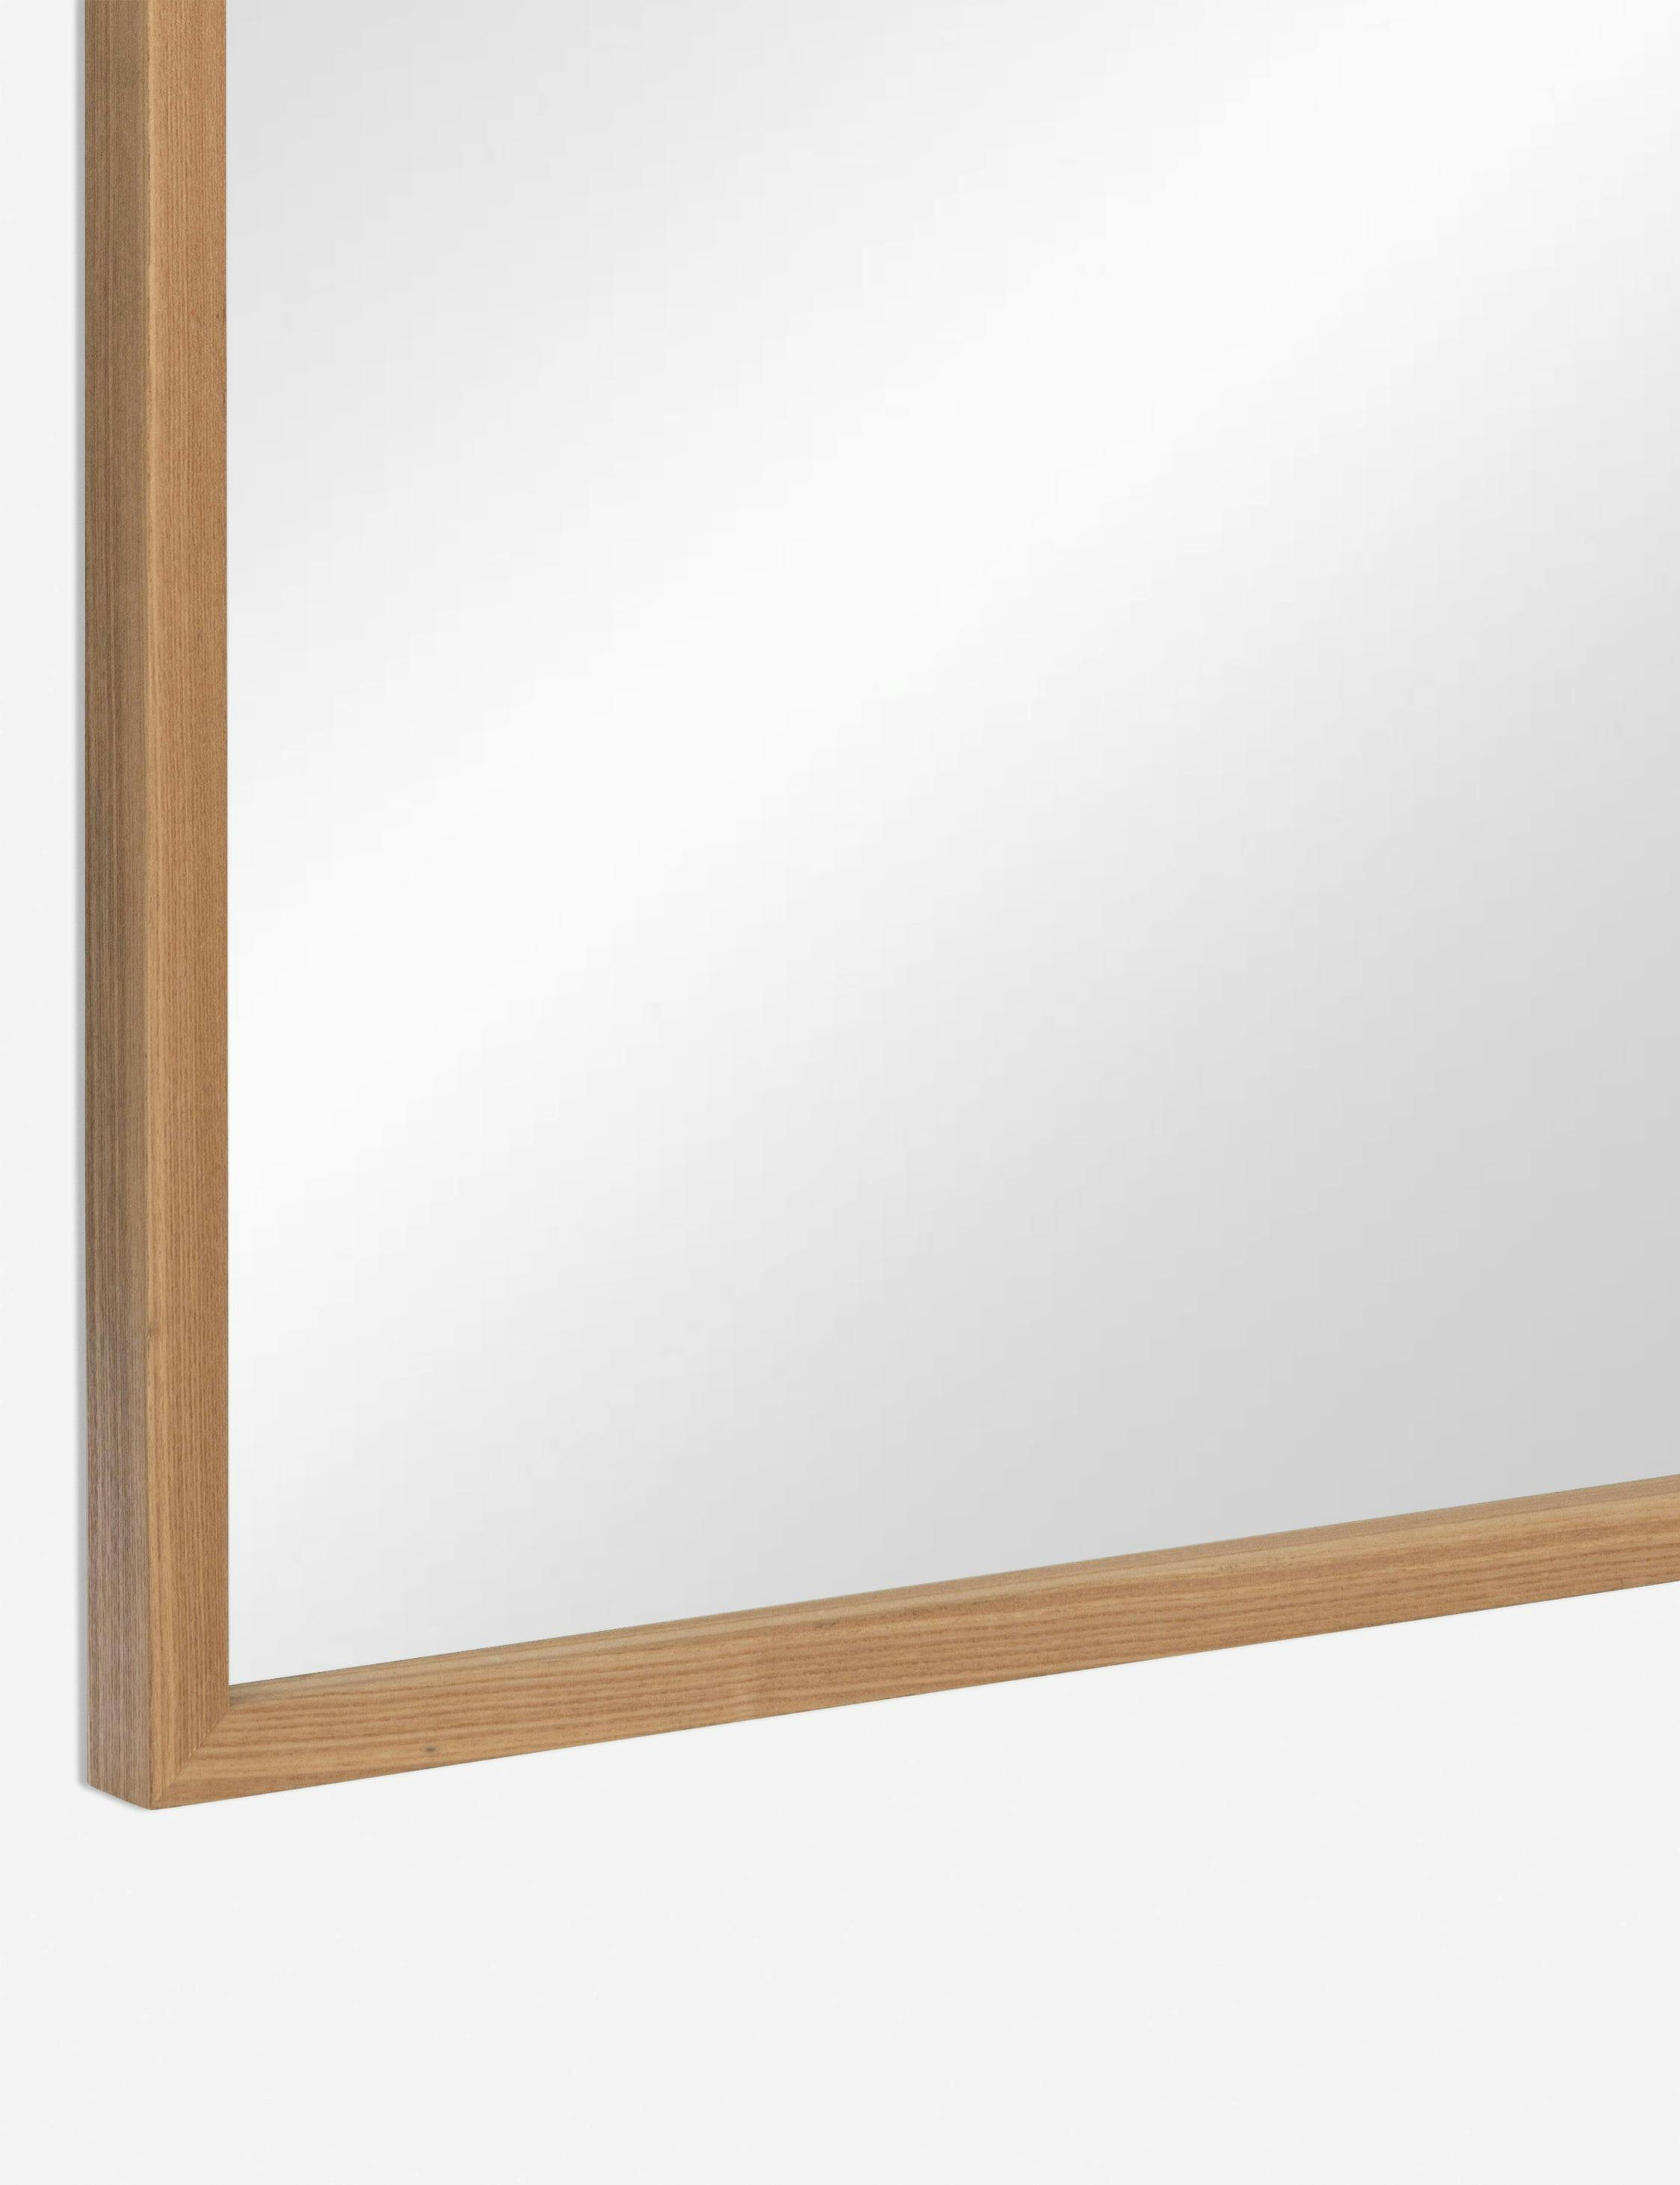 Elva Rustic Full Length Natural Wood Freestanding Mirror